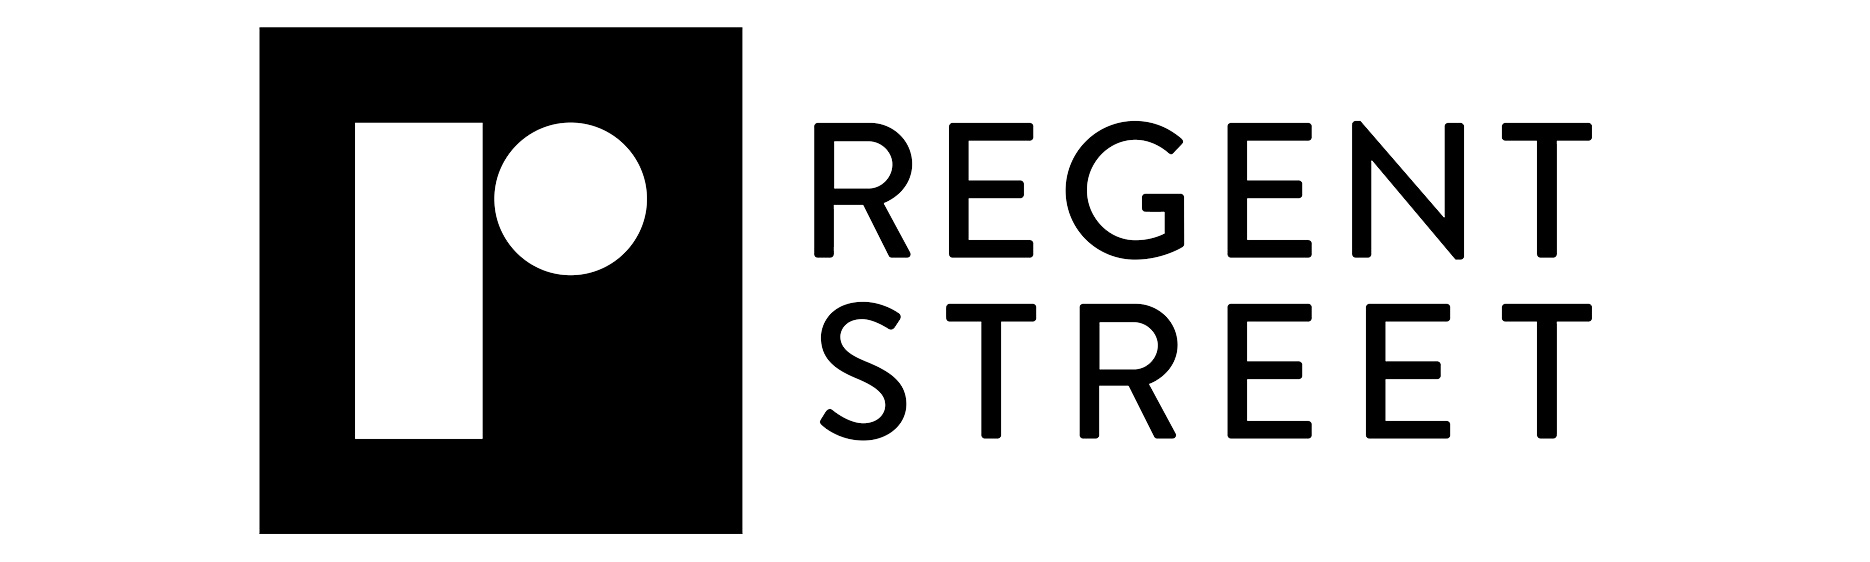 Regent Street logo - A Partner of London Restaurant Festival